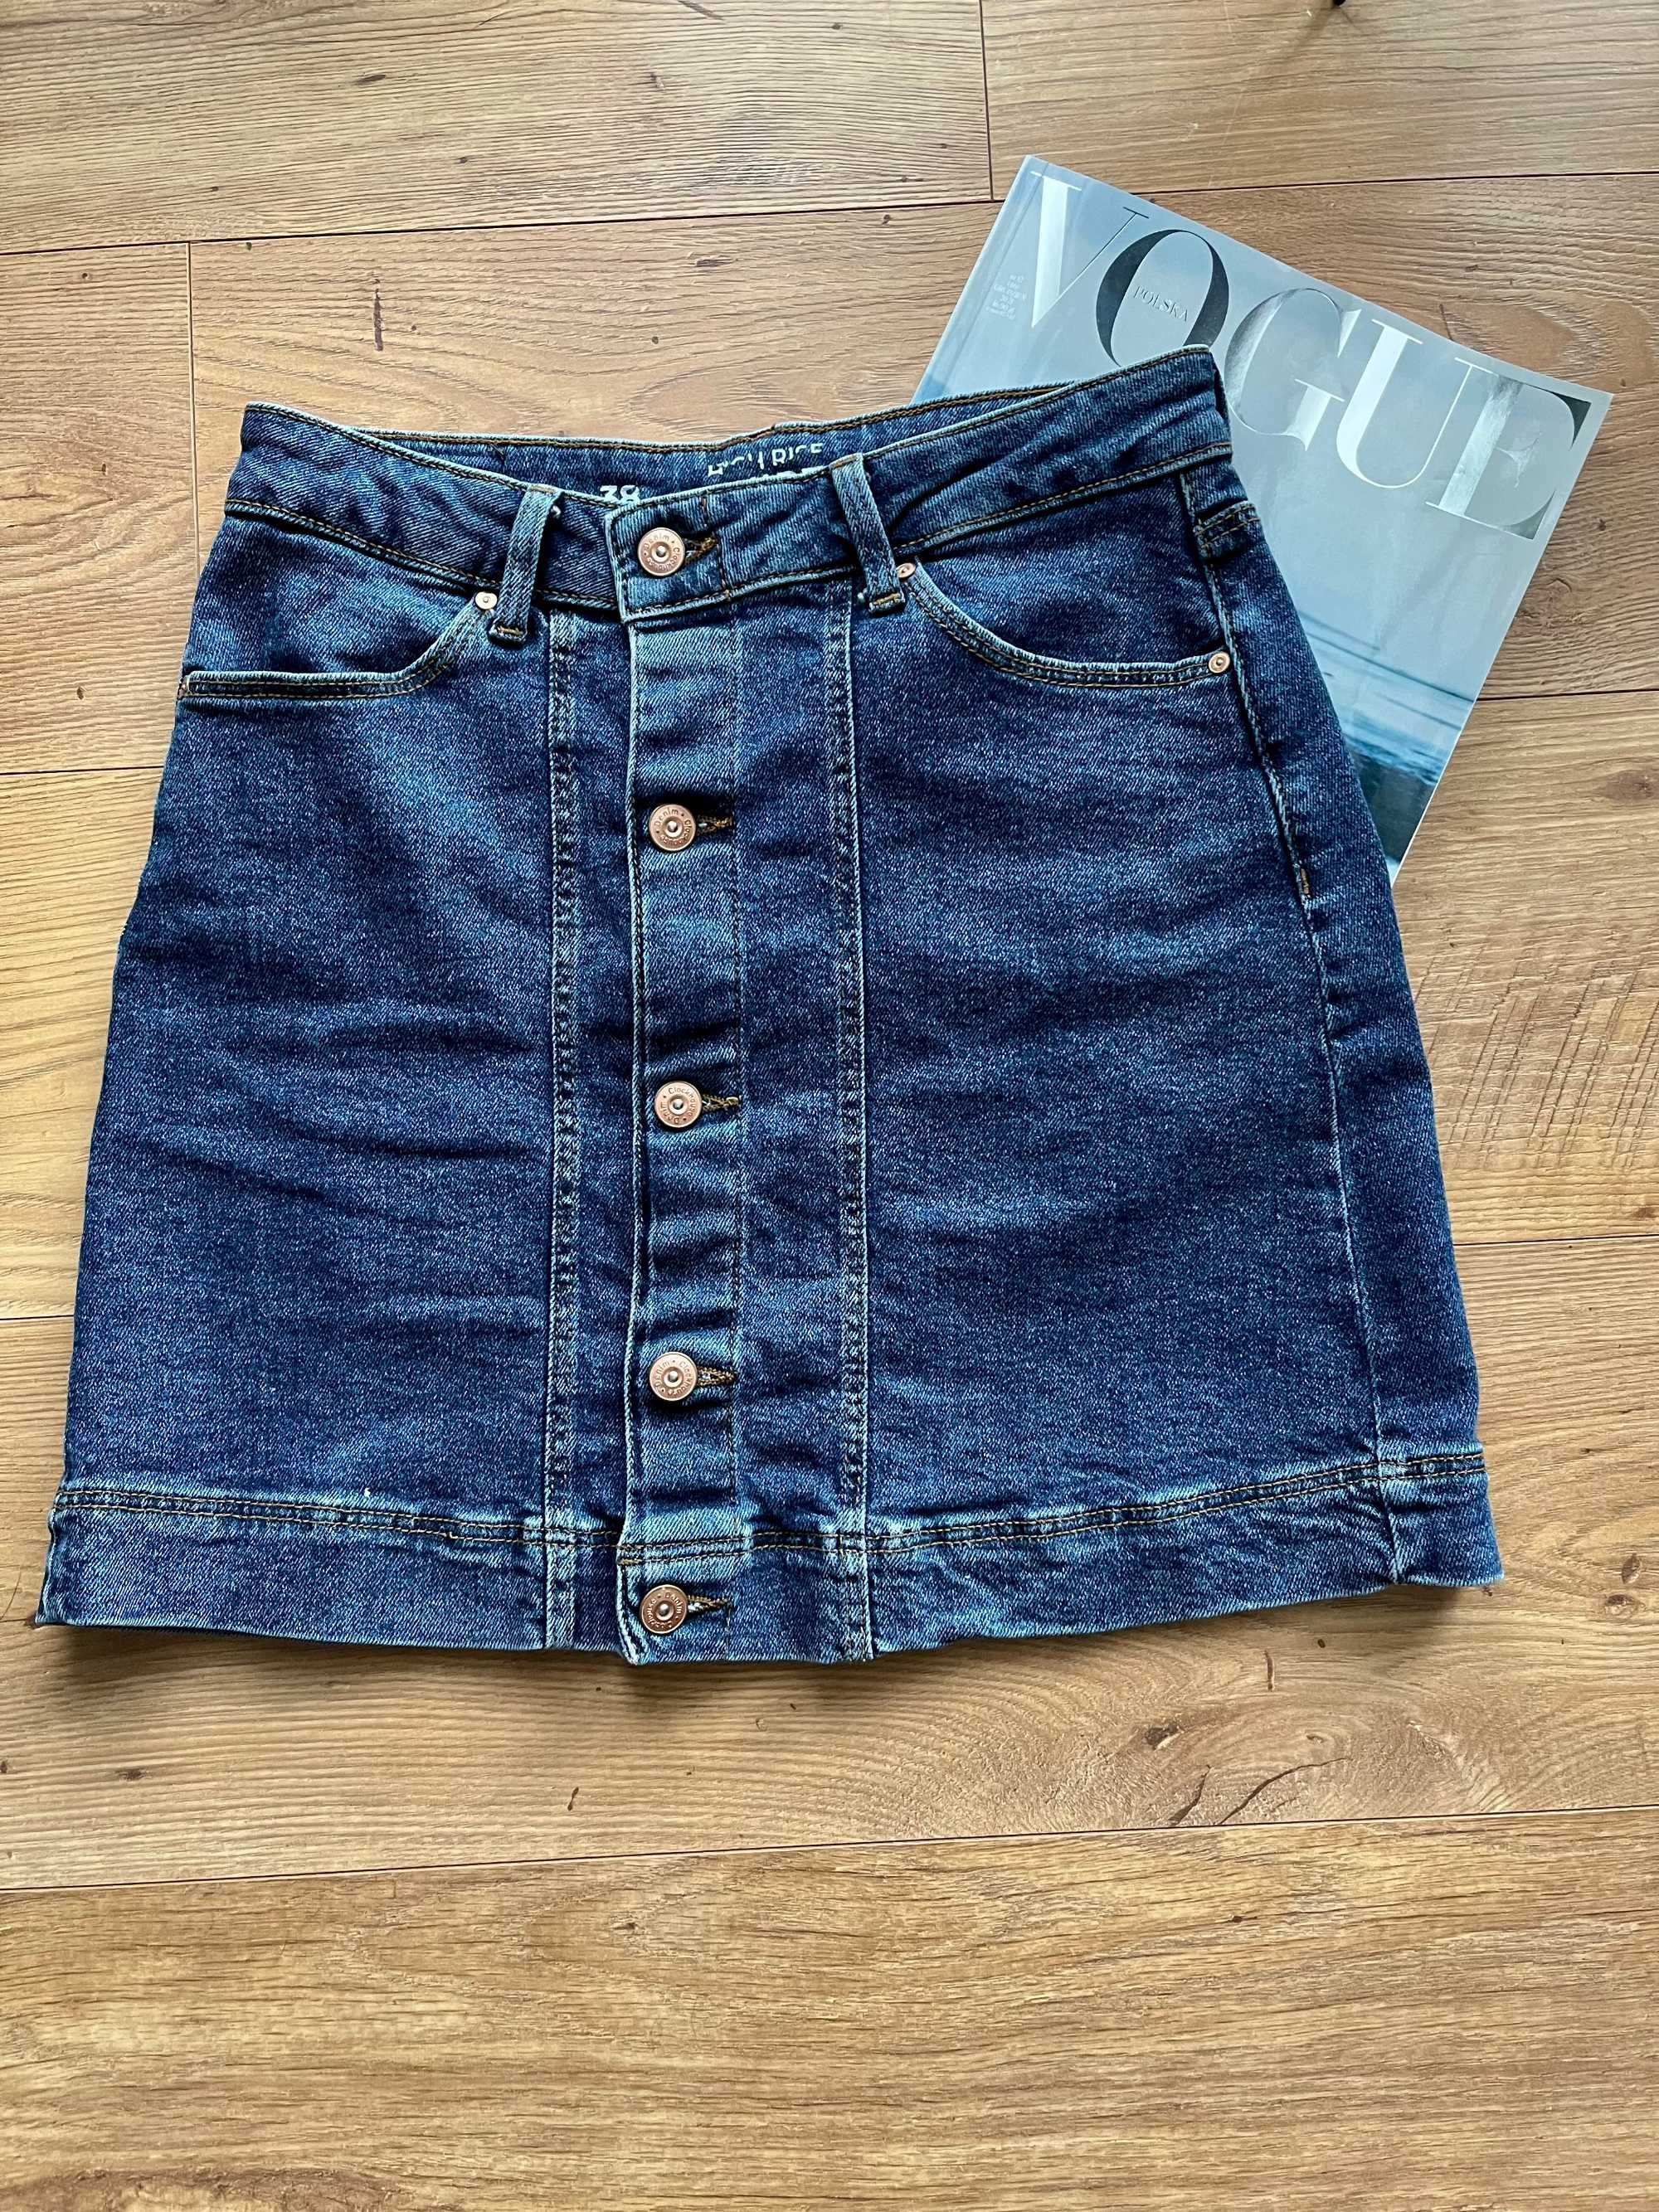 Spódnica jeansowa dżinsowa 38 niebieska Clockhouse vintage klasyczna